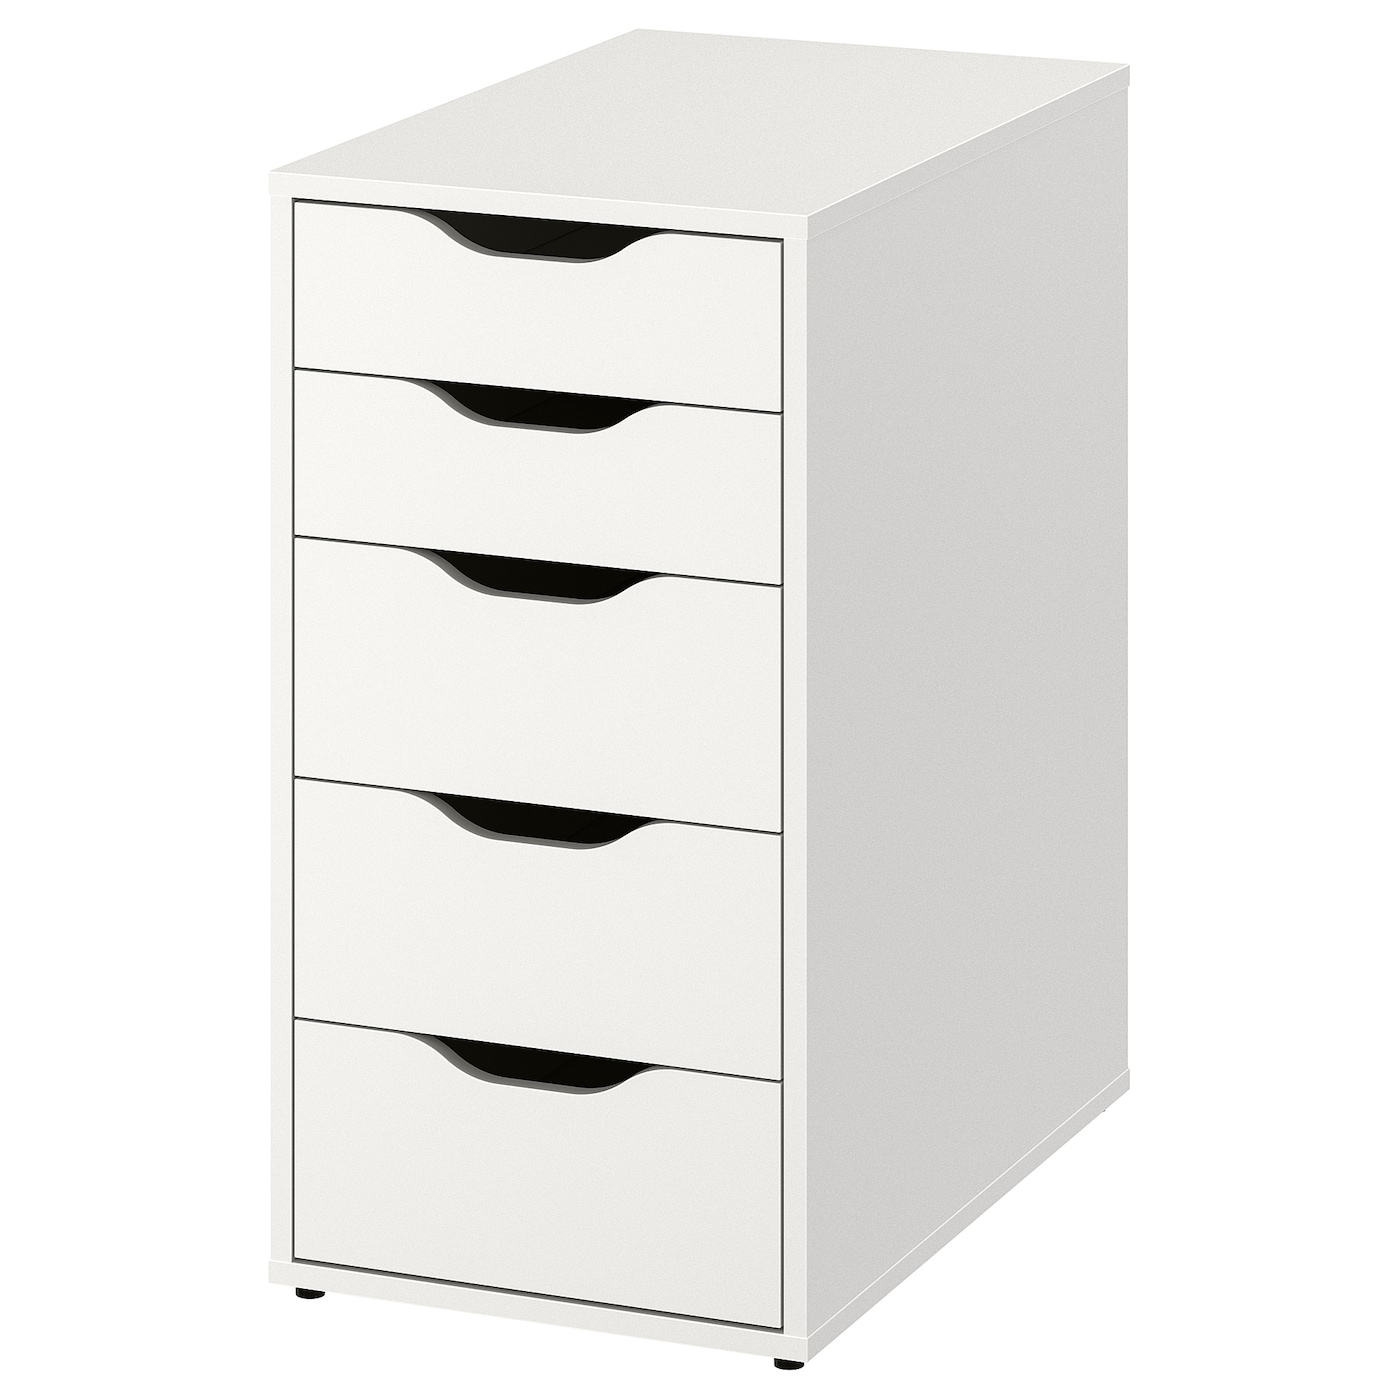 Блок хранения - IKEA ALEX, 36x70 см, белый, АЛЕКС ИКЕА